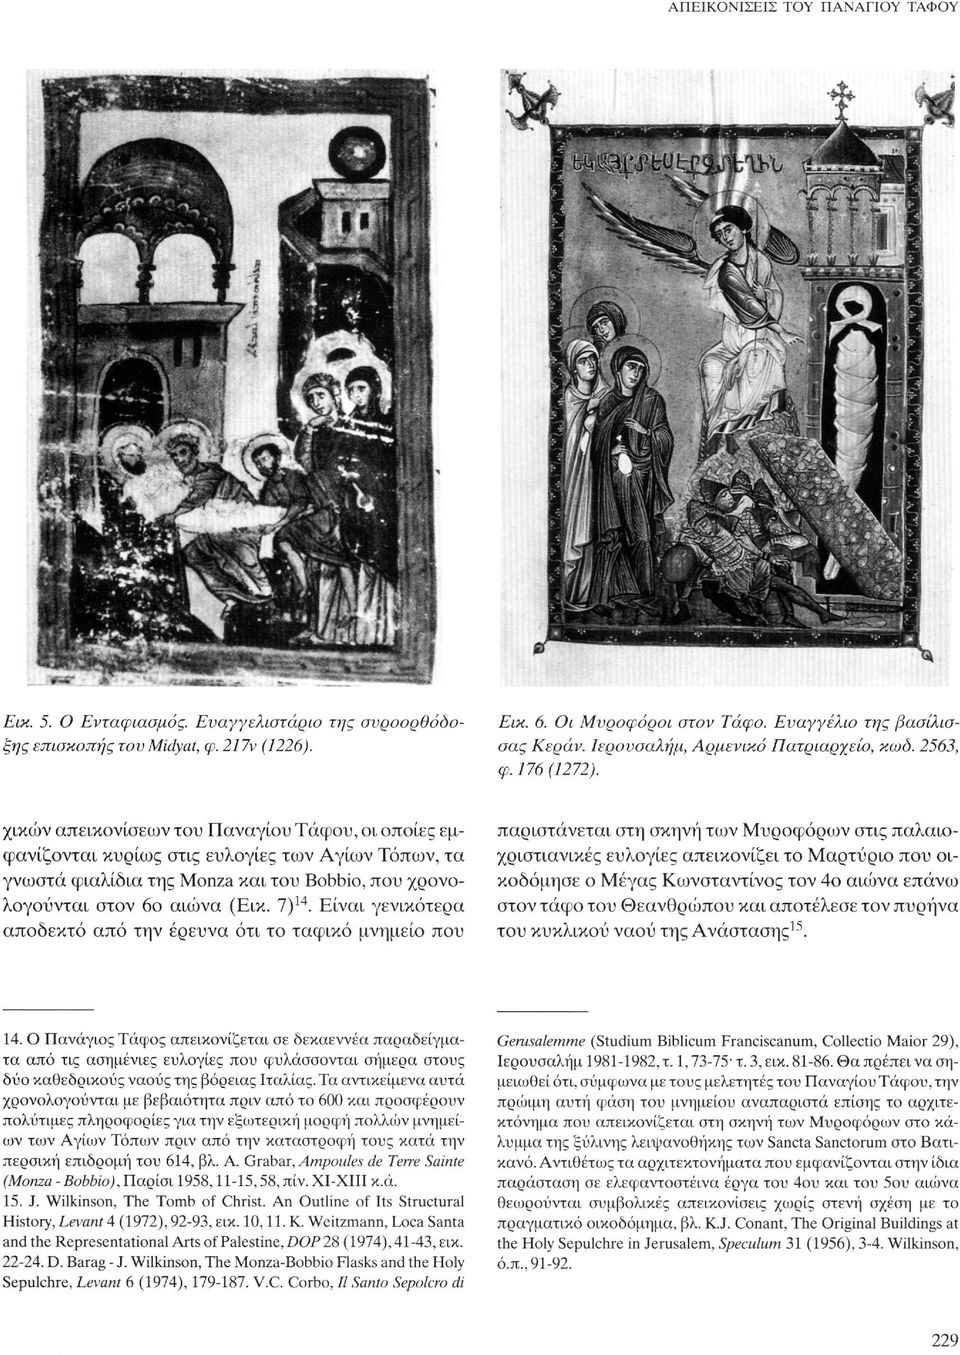 χικών απεικονίσεων του Παναγίου Τάφου, οι οποίες εμφανίζονται κυρίως στις ευλογίες των Αγίων Τόπων, τα γνωστά φιαλίδια της Monza και του Bobbio, που χρονολογούνται στον 6ο αιώνα (Εικ. 7) 14.